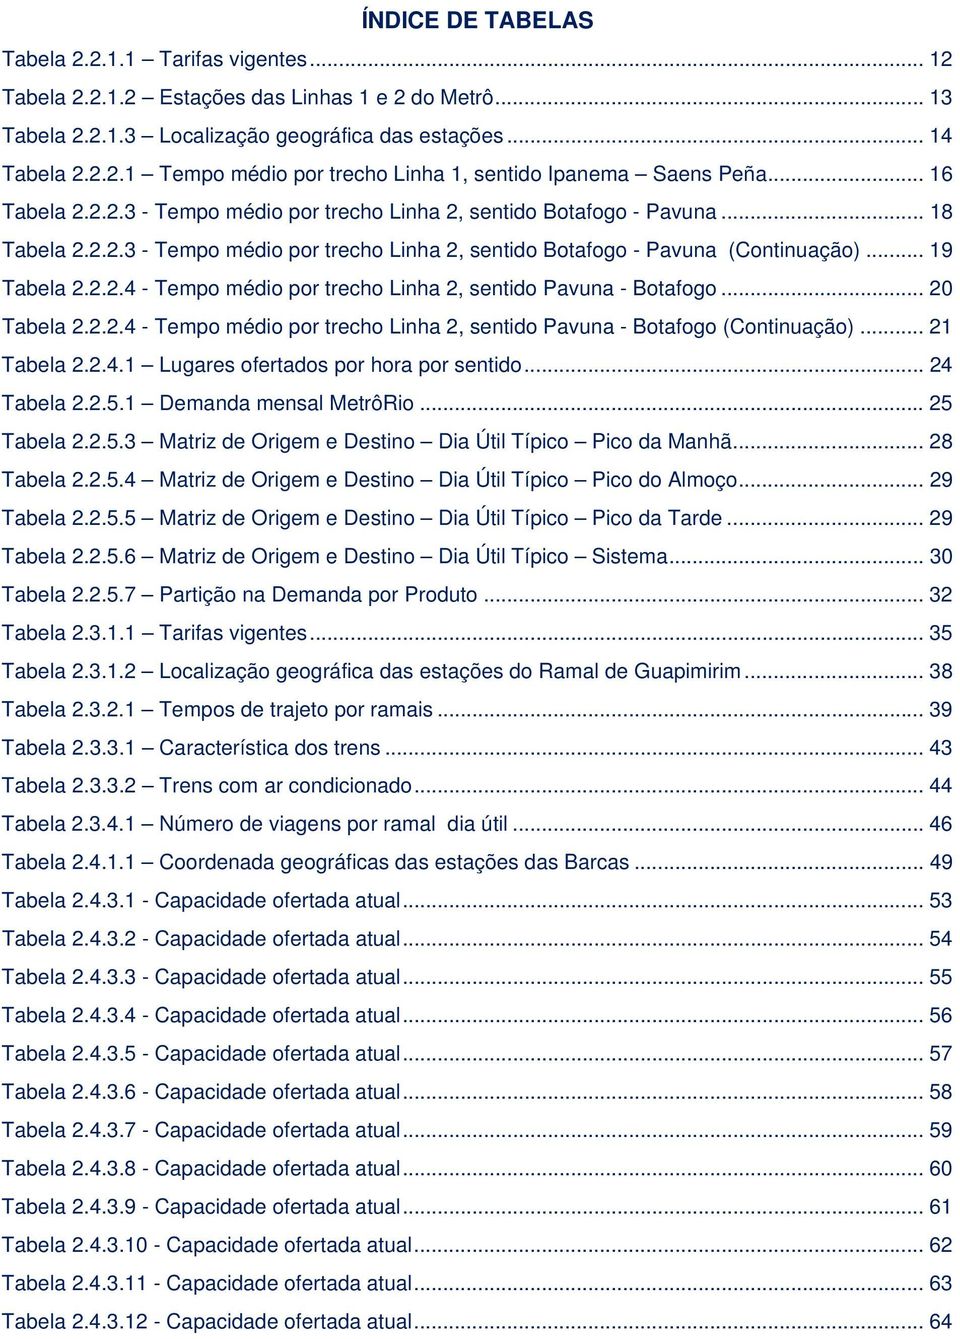 .. 20 Tabela 2.2.2.4 - Tempo médio por trecho Linha 2, sentido Pavuna - Botafogo (Continuação)... 21 Tabela 2.2.4.1 Lugares ofertados por hora por sentido... 24 Tabela 2.2.5.1 Demanda mensal MetrôRio.